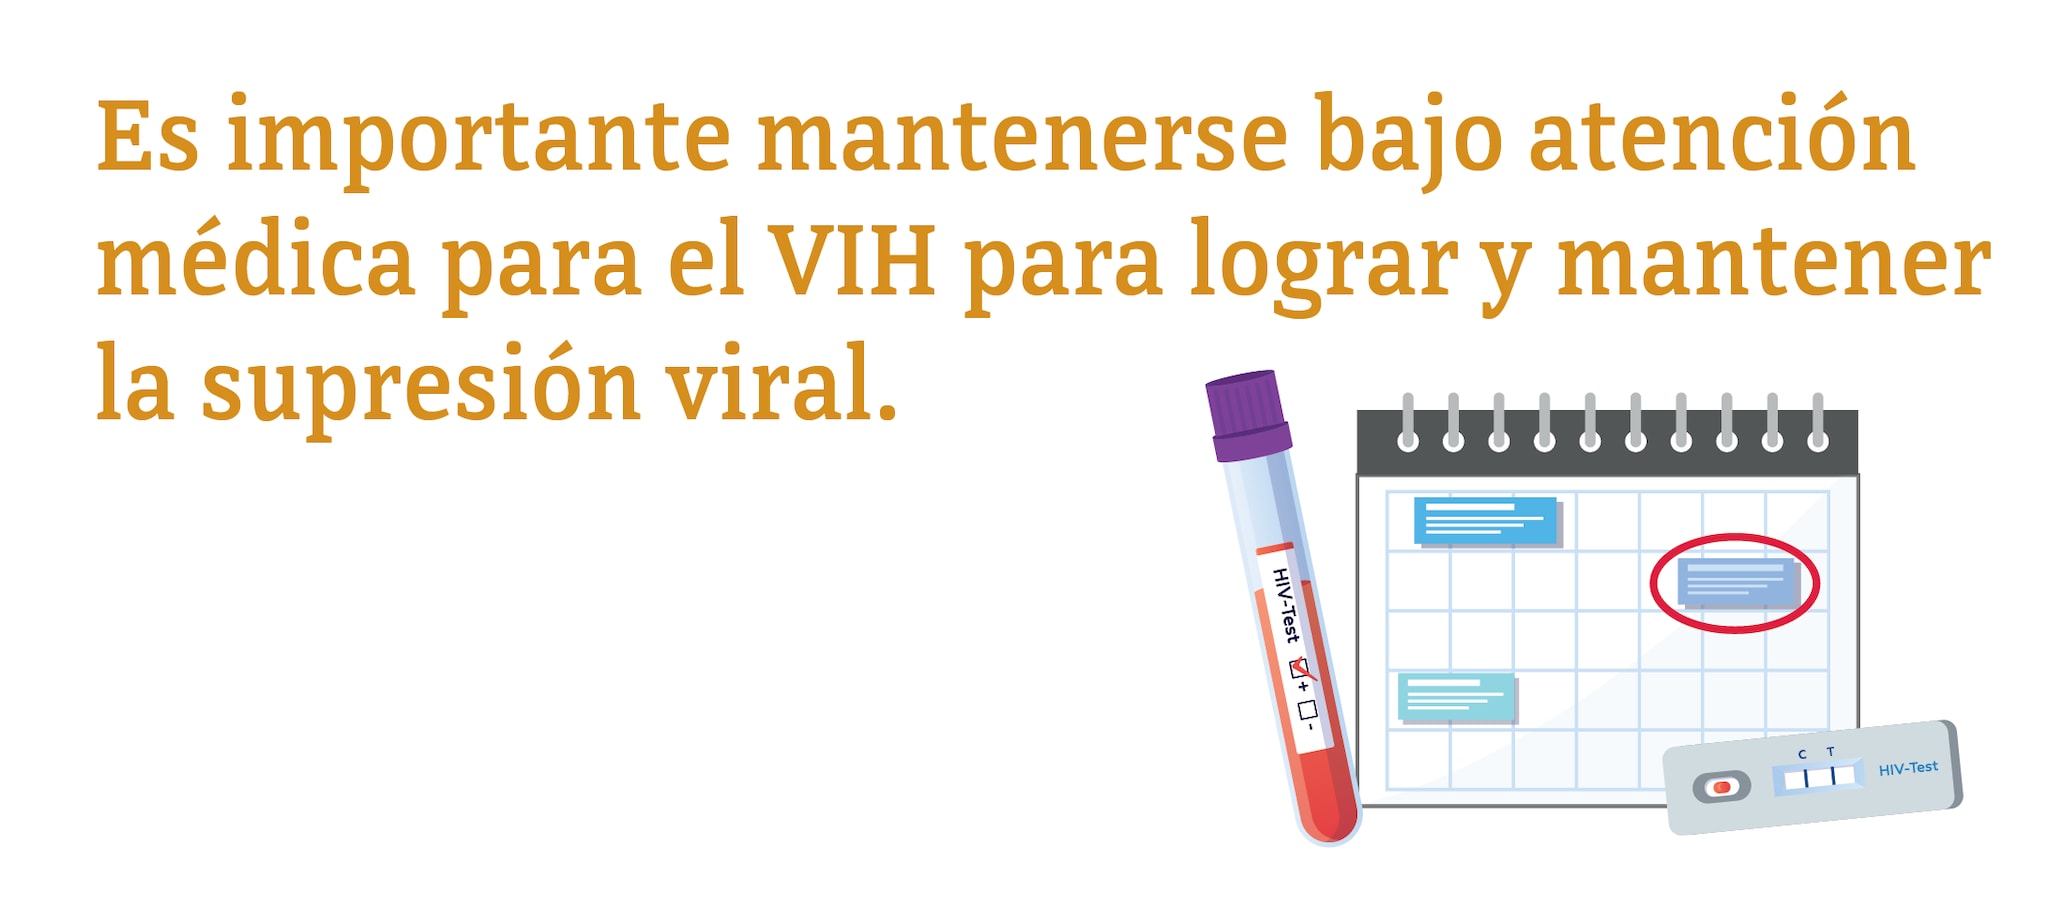 Es importante mantenerse bajo atención médica para el VIH para lograr y mantener la supresión viral.